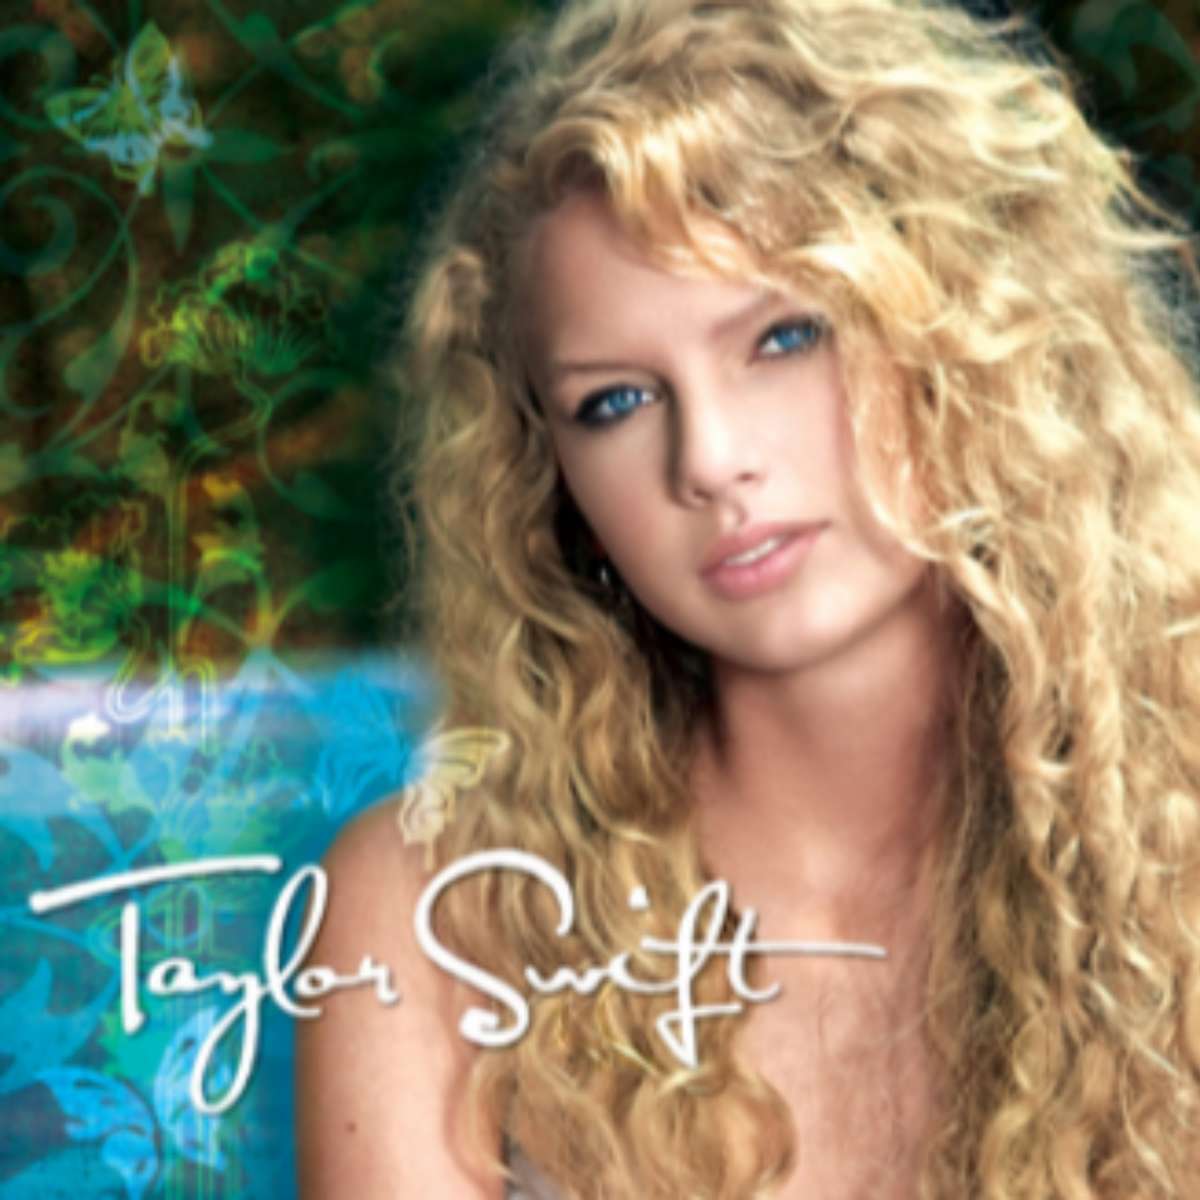 Copertina dell'album debutto di Taylor Swift puzzle online